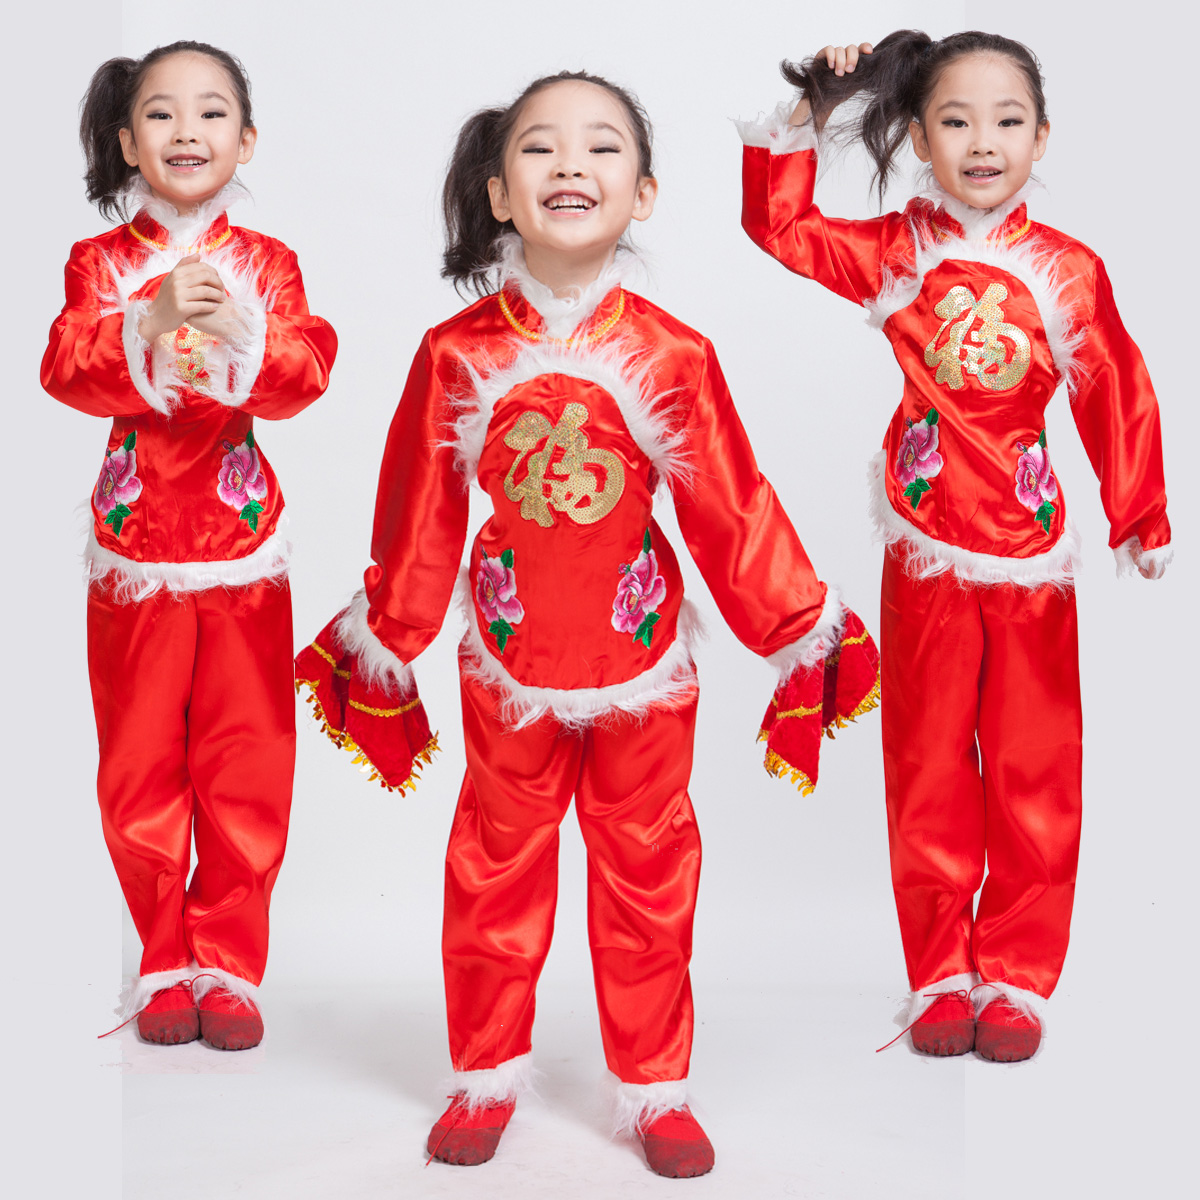 儿童秧歌服民族舞蹈服六一儿童节表演少儿女童装幼儿园演出服装冬折扣优惠信息